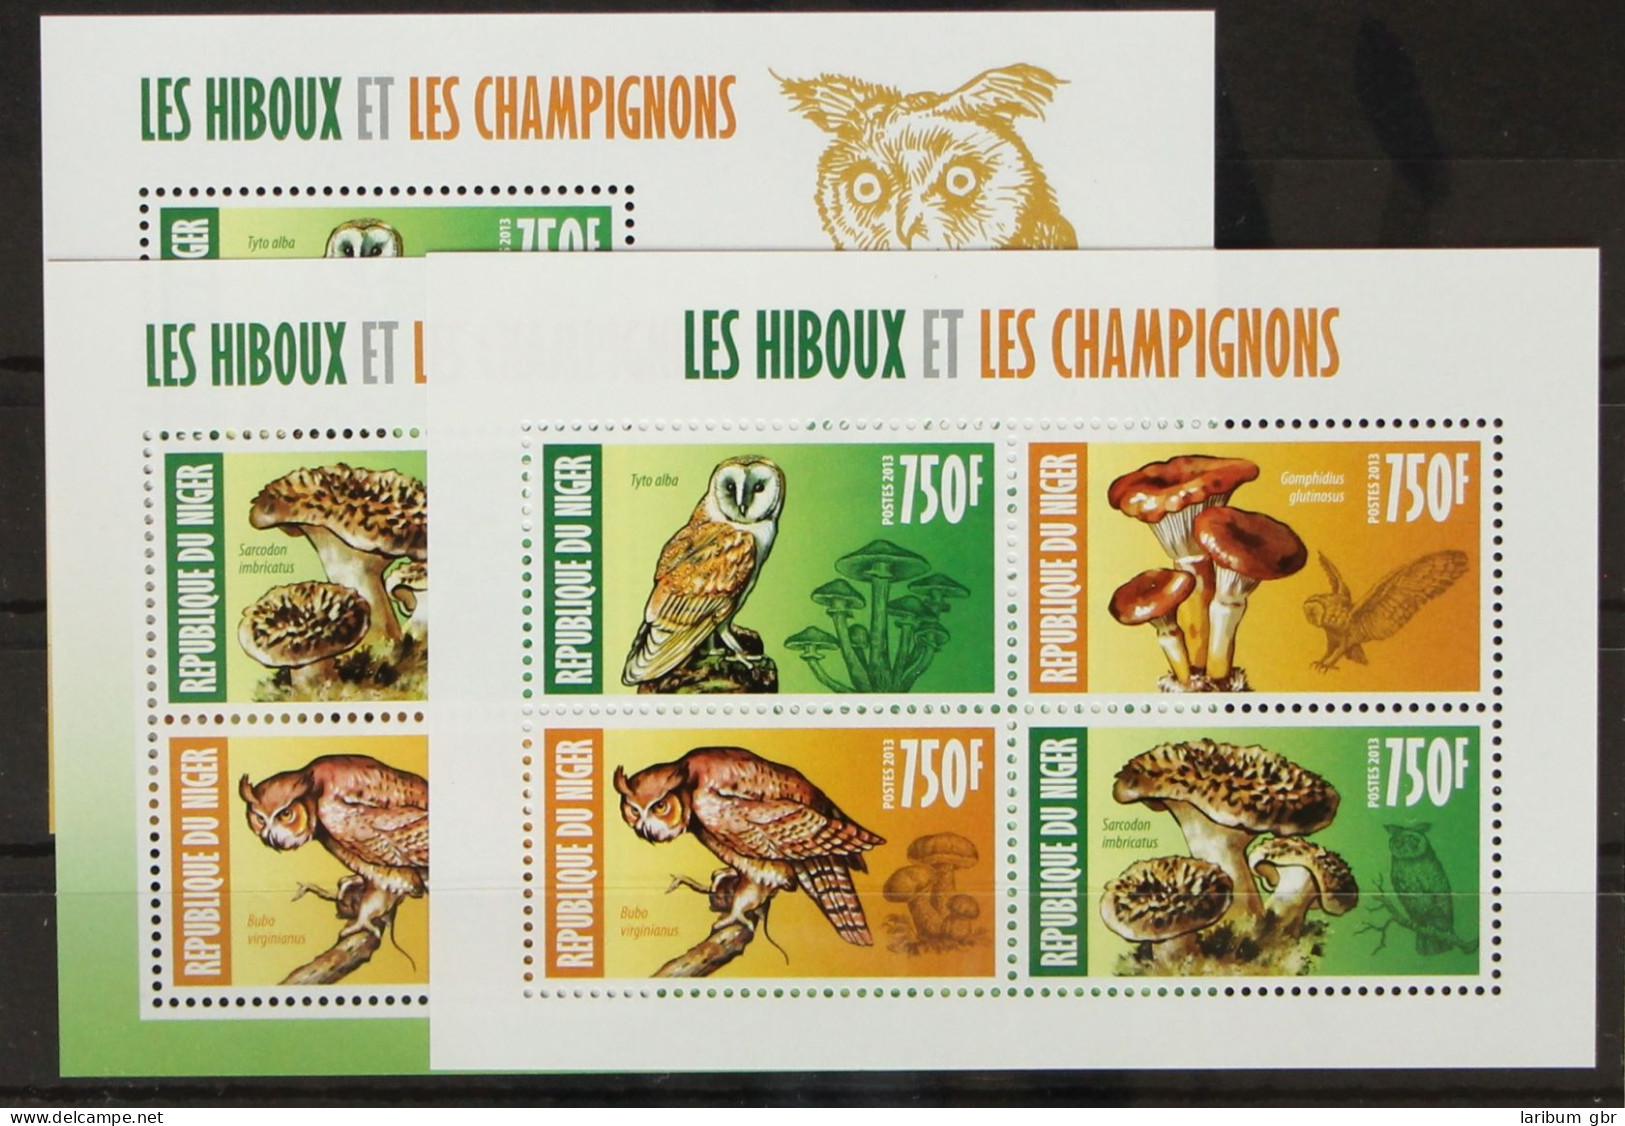 Niger 1982-1984 Postfrisch Kleinbogen, Paare Im Bogen / Pilze #GH240 - Niger (1960-...)